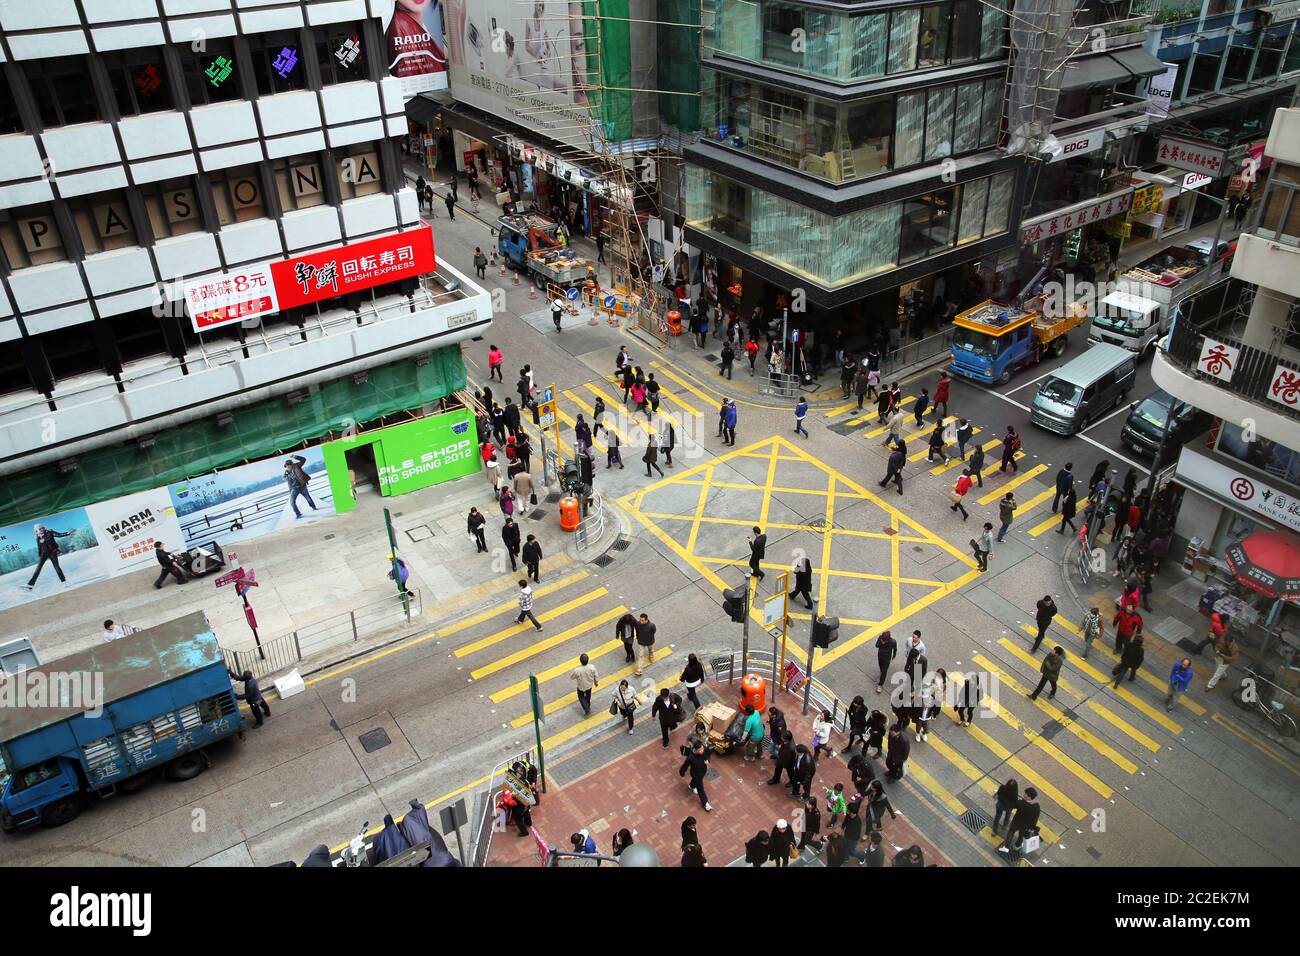 Hong Kong - January 4, 2012: Aerial view of a crossing in Kowloon, Hong-Kong, China. Stock Photo